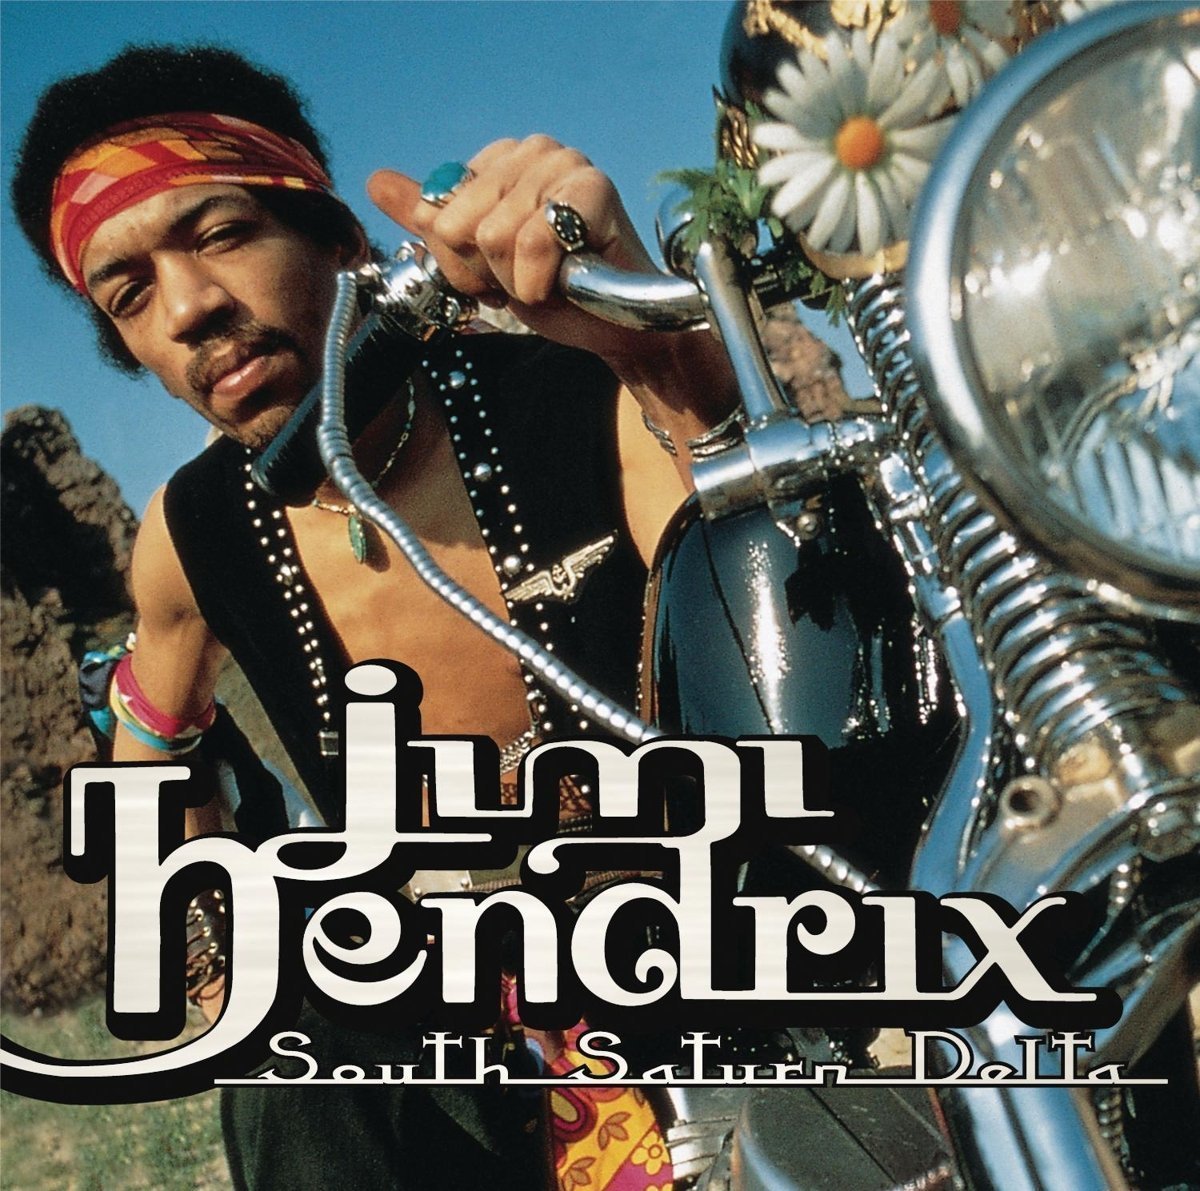 Disque vinyle Jimi Hendrix South Saturn Delta (2 LP)